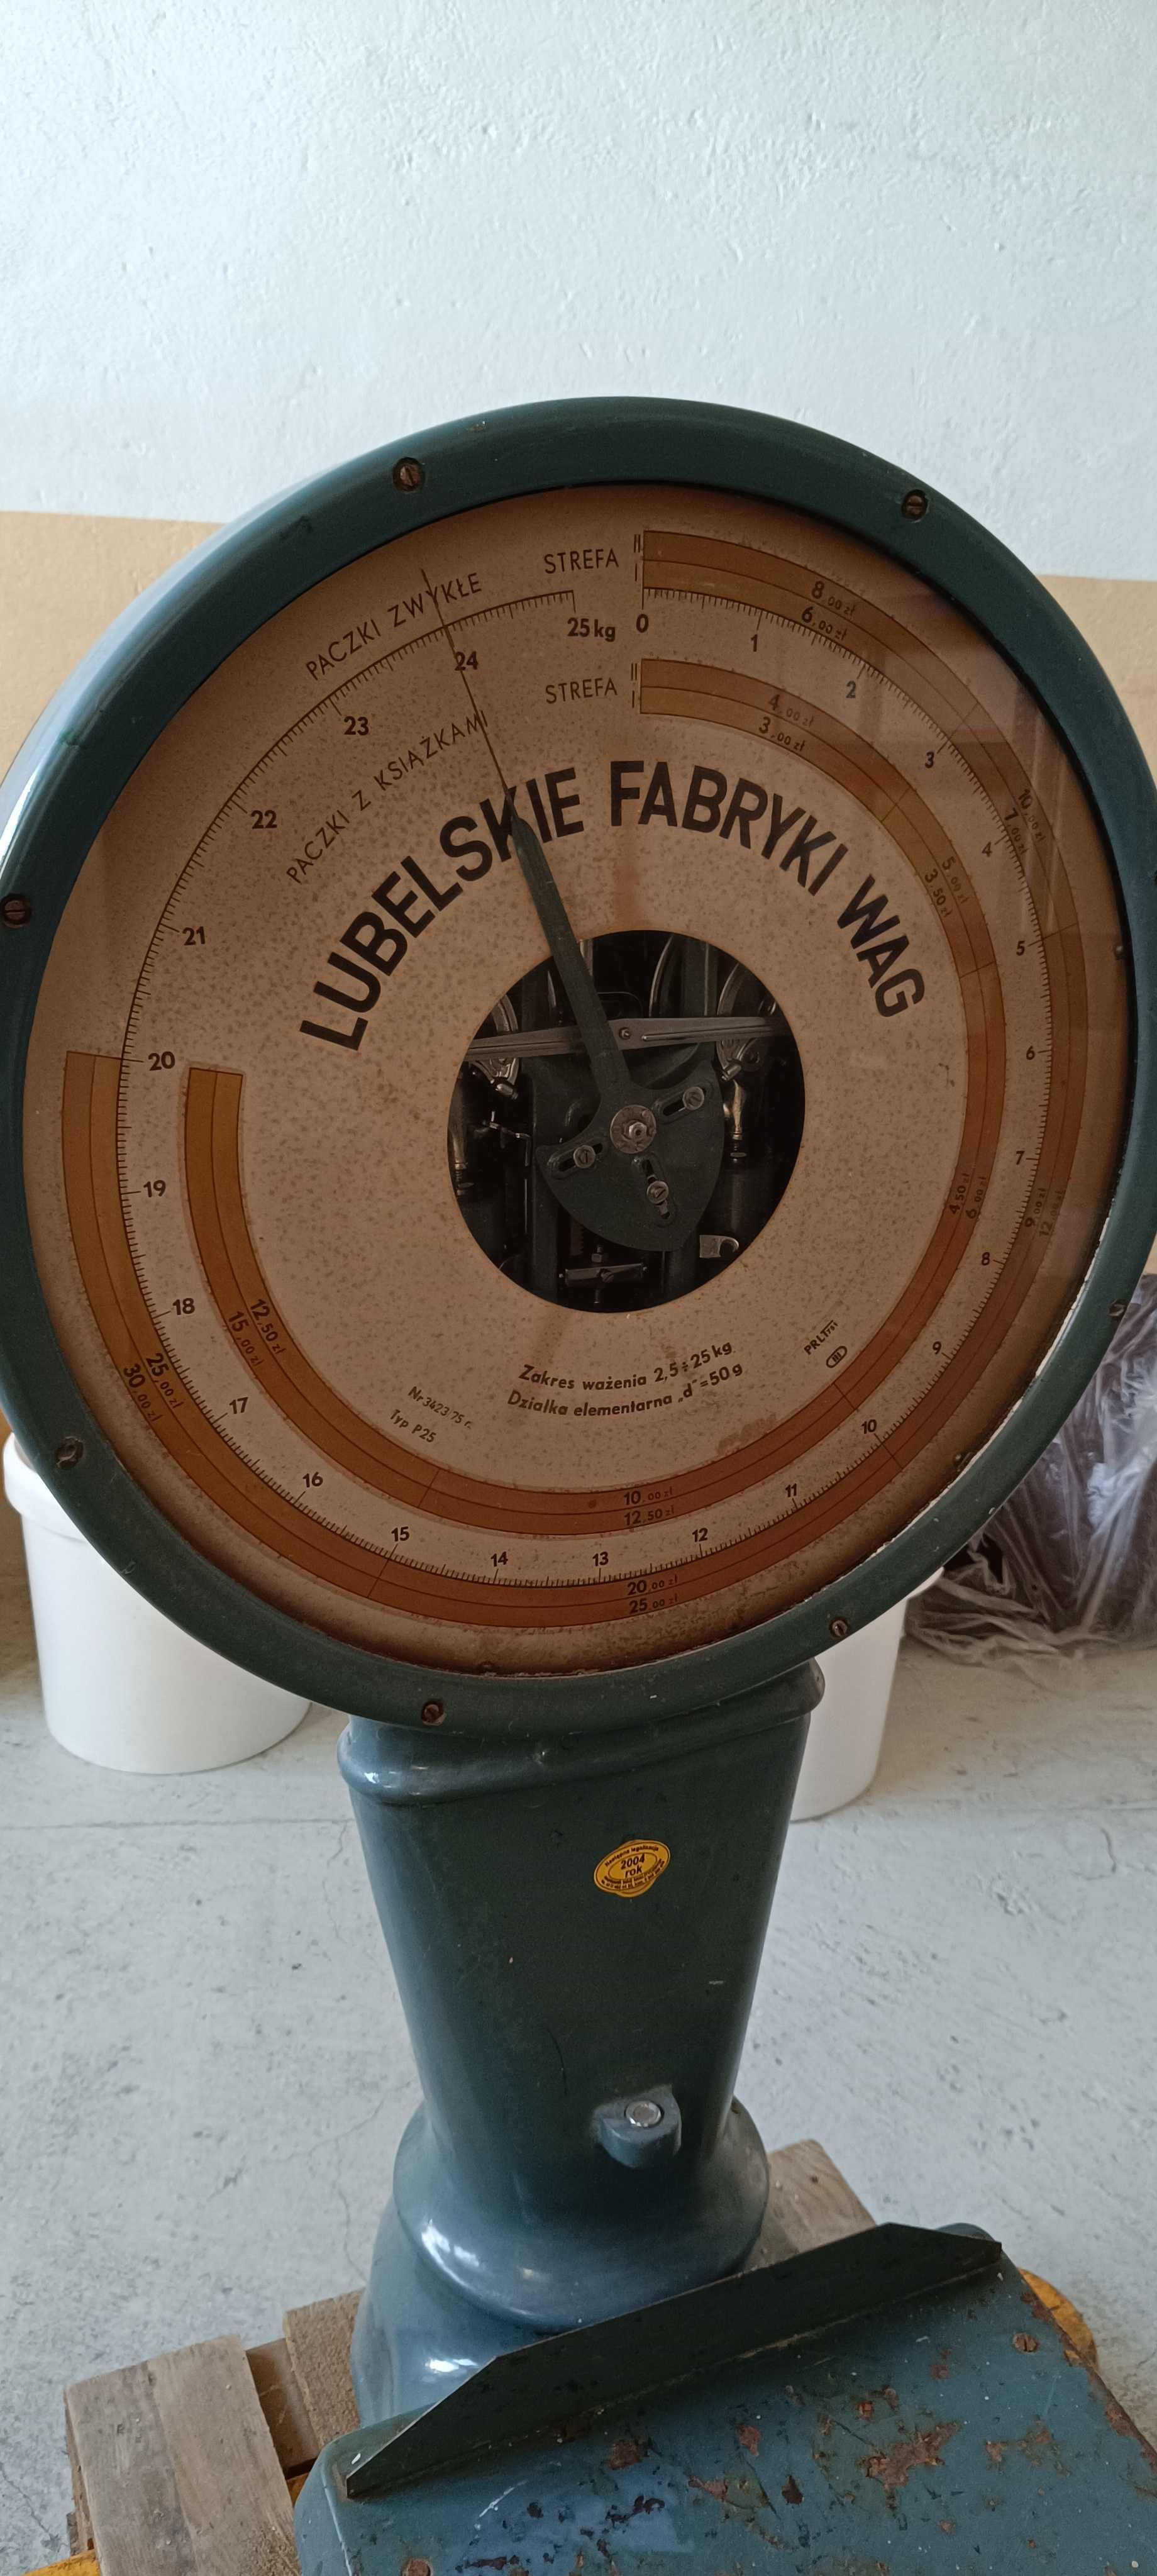 Waga pocztowa Lubelskie Fabryki Wag 25 kg.